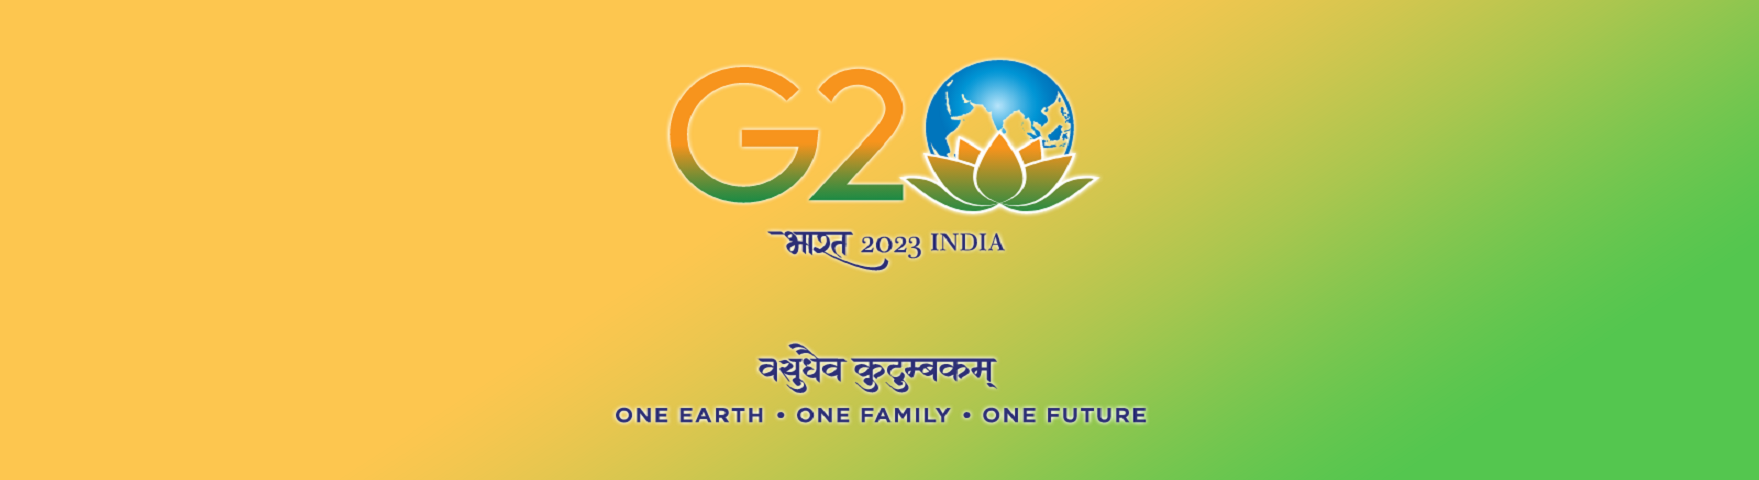 G-20 India 2022